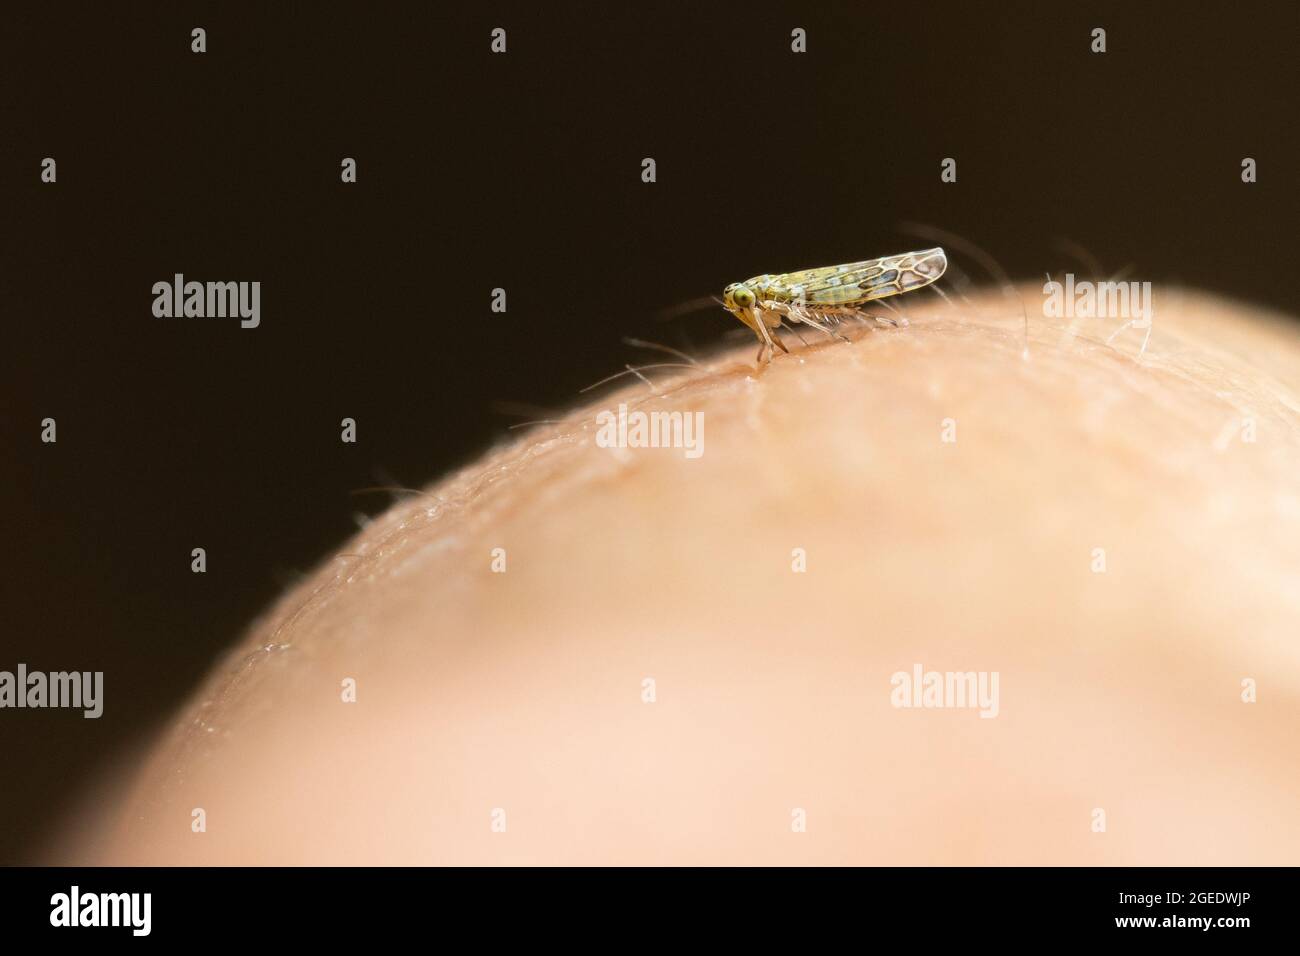 Tiny Eupteryx Leafhopper sul retro della mano di una persona per un senso di scala (circa 3 mm) la fauna selvatica del Regno Unito Foto Stock